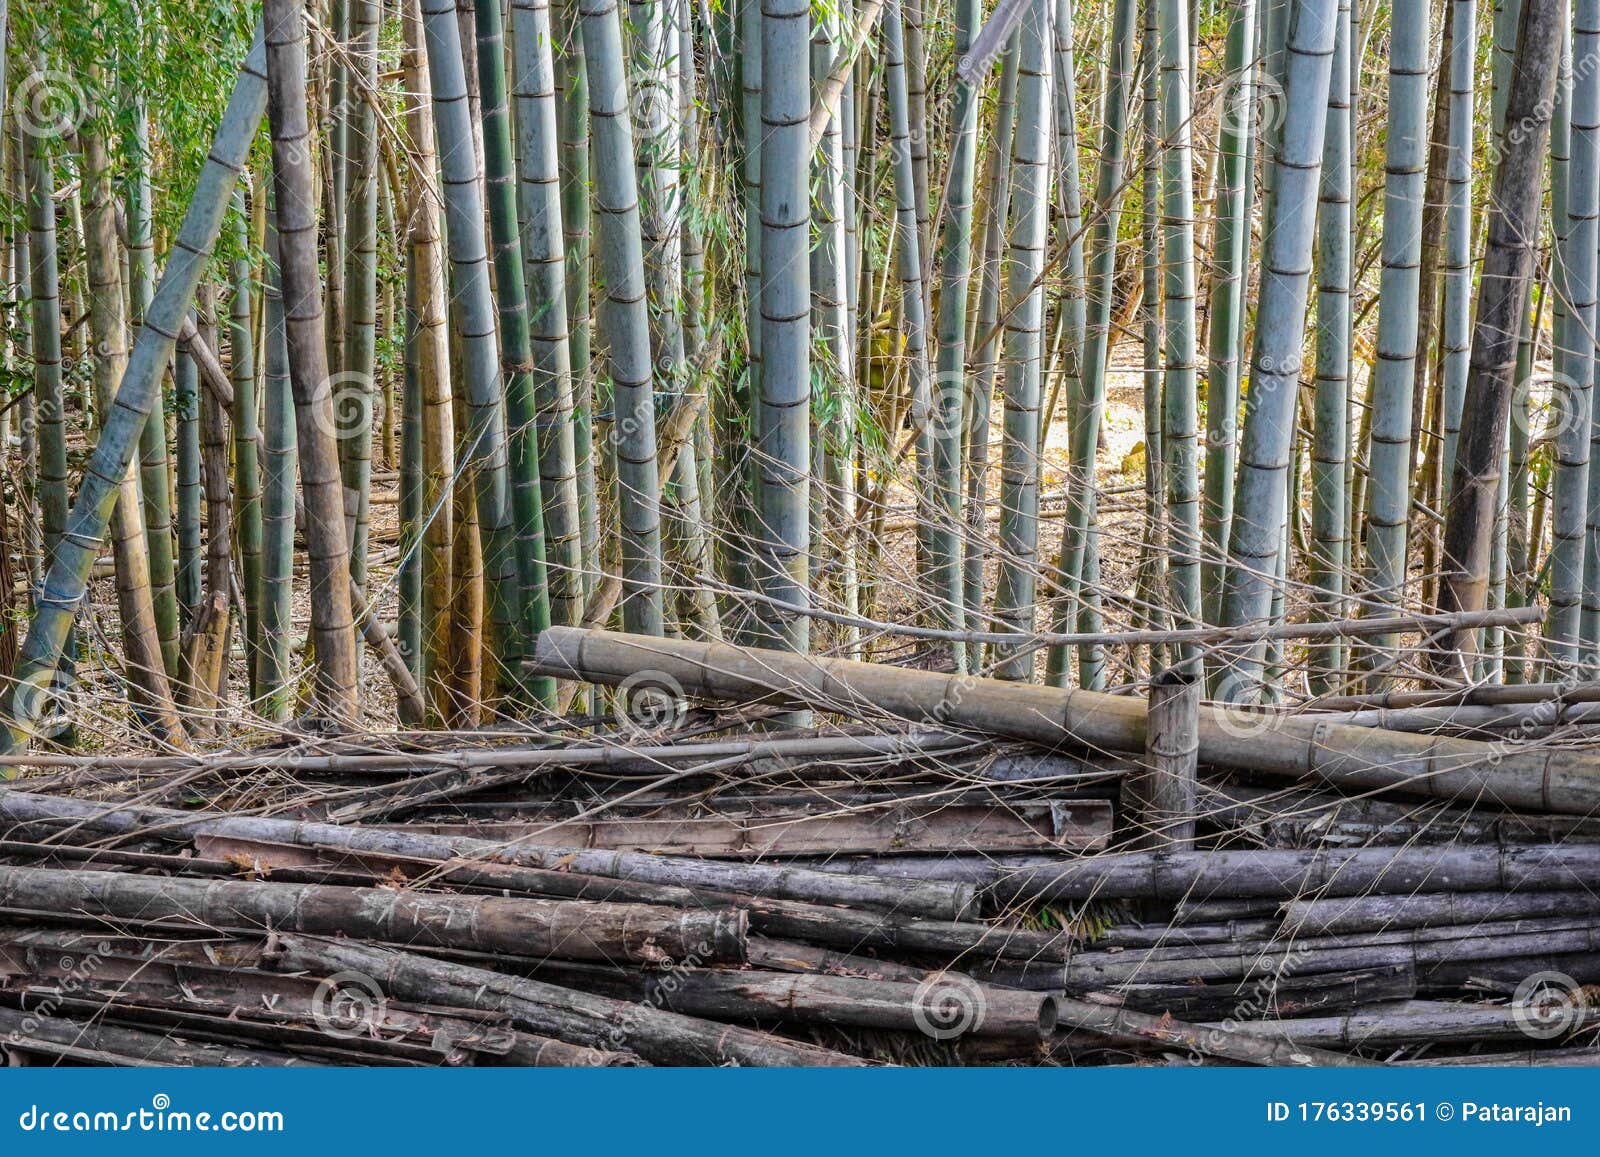 Vorming Beoefend bericht Droog Dood En Stamleven Bamboe in De Bosomgeving. Stock Afbeelding - Image  of botanisch, mooi: 176339561